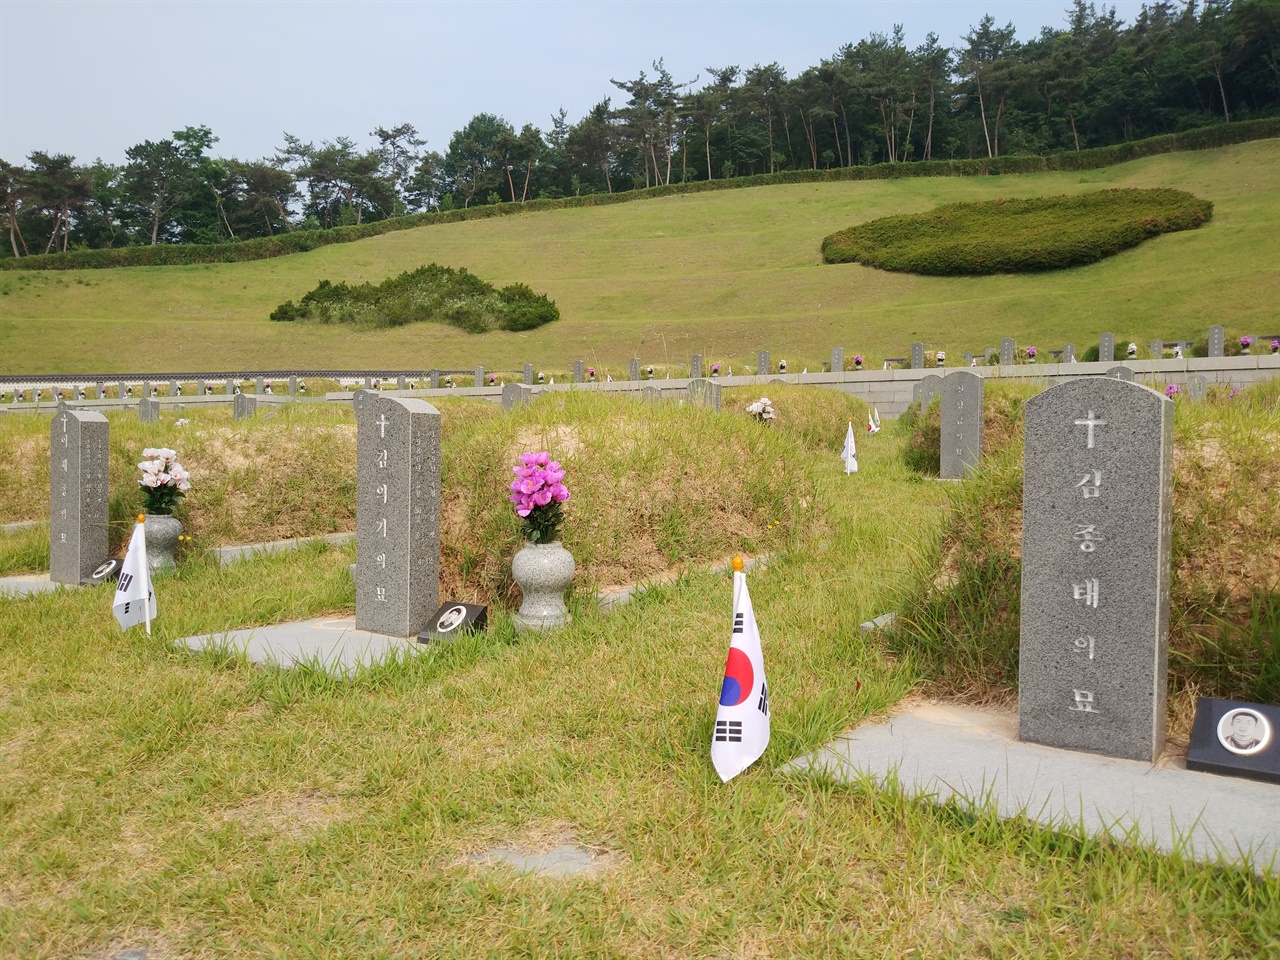 김의기 열사 묘소 왼편에는 5.18 당시 최초의 희생자로 알려진 전북대학생 이세종 열사가 잠들어 있다. 국립 5.18 민주묘지에 가거든, 이 세 청년의 묘소를 찾아 참배하길 권한다.